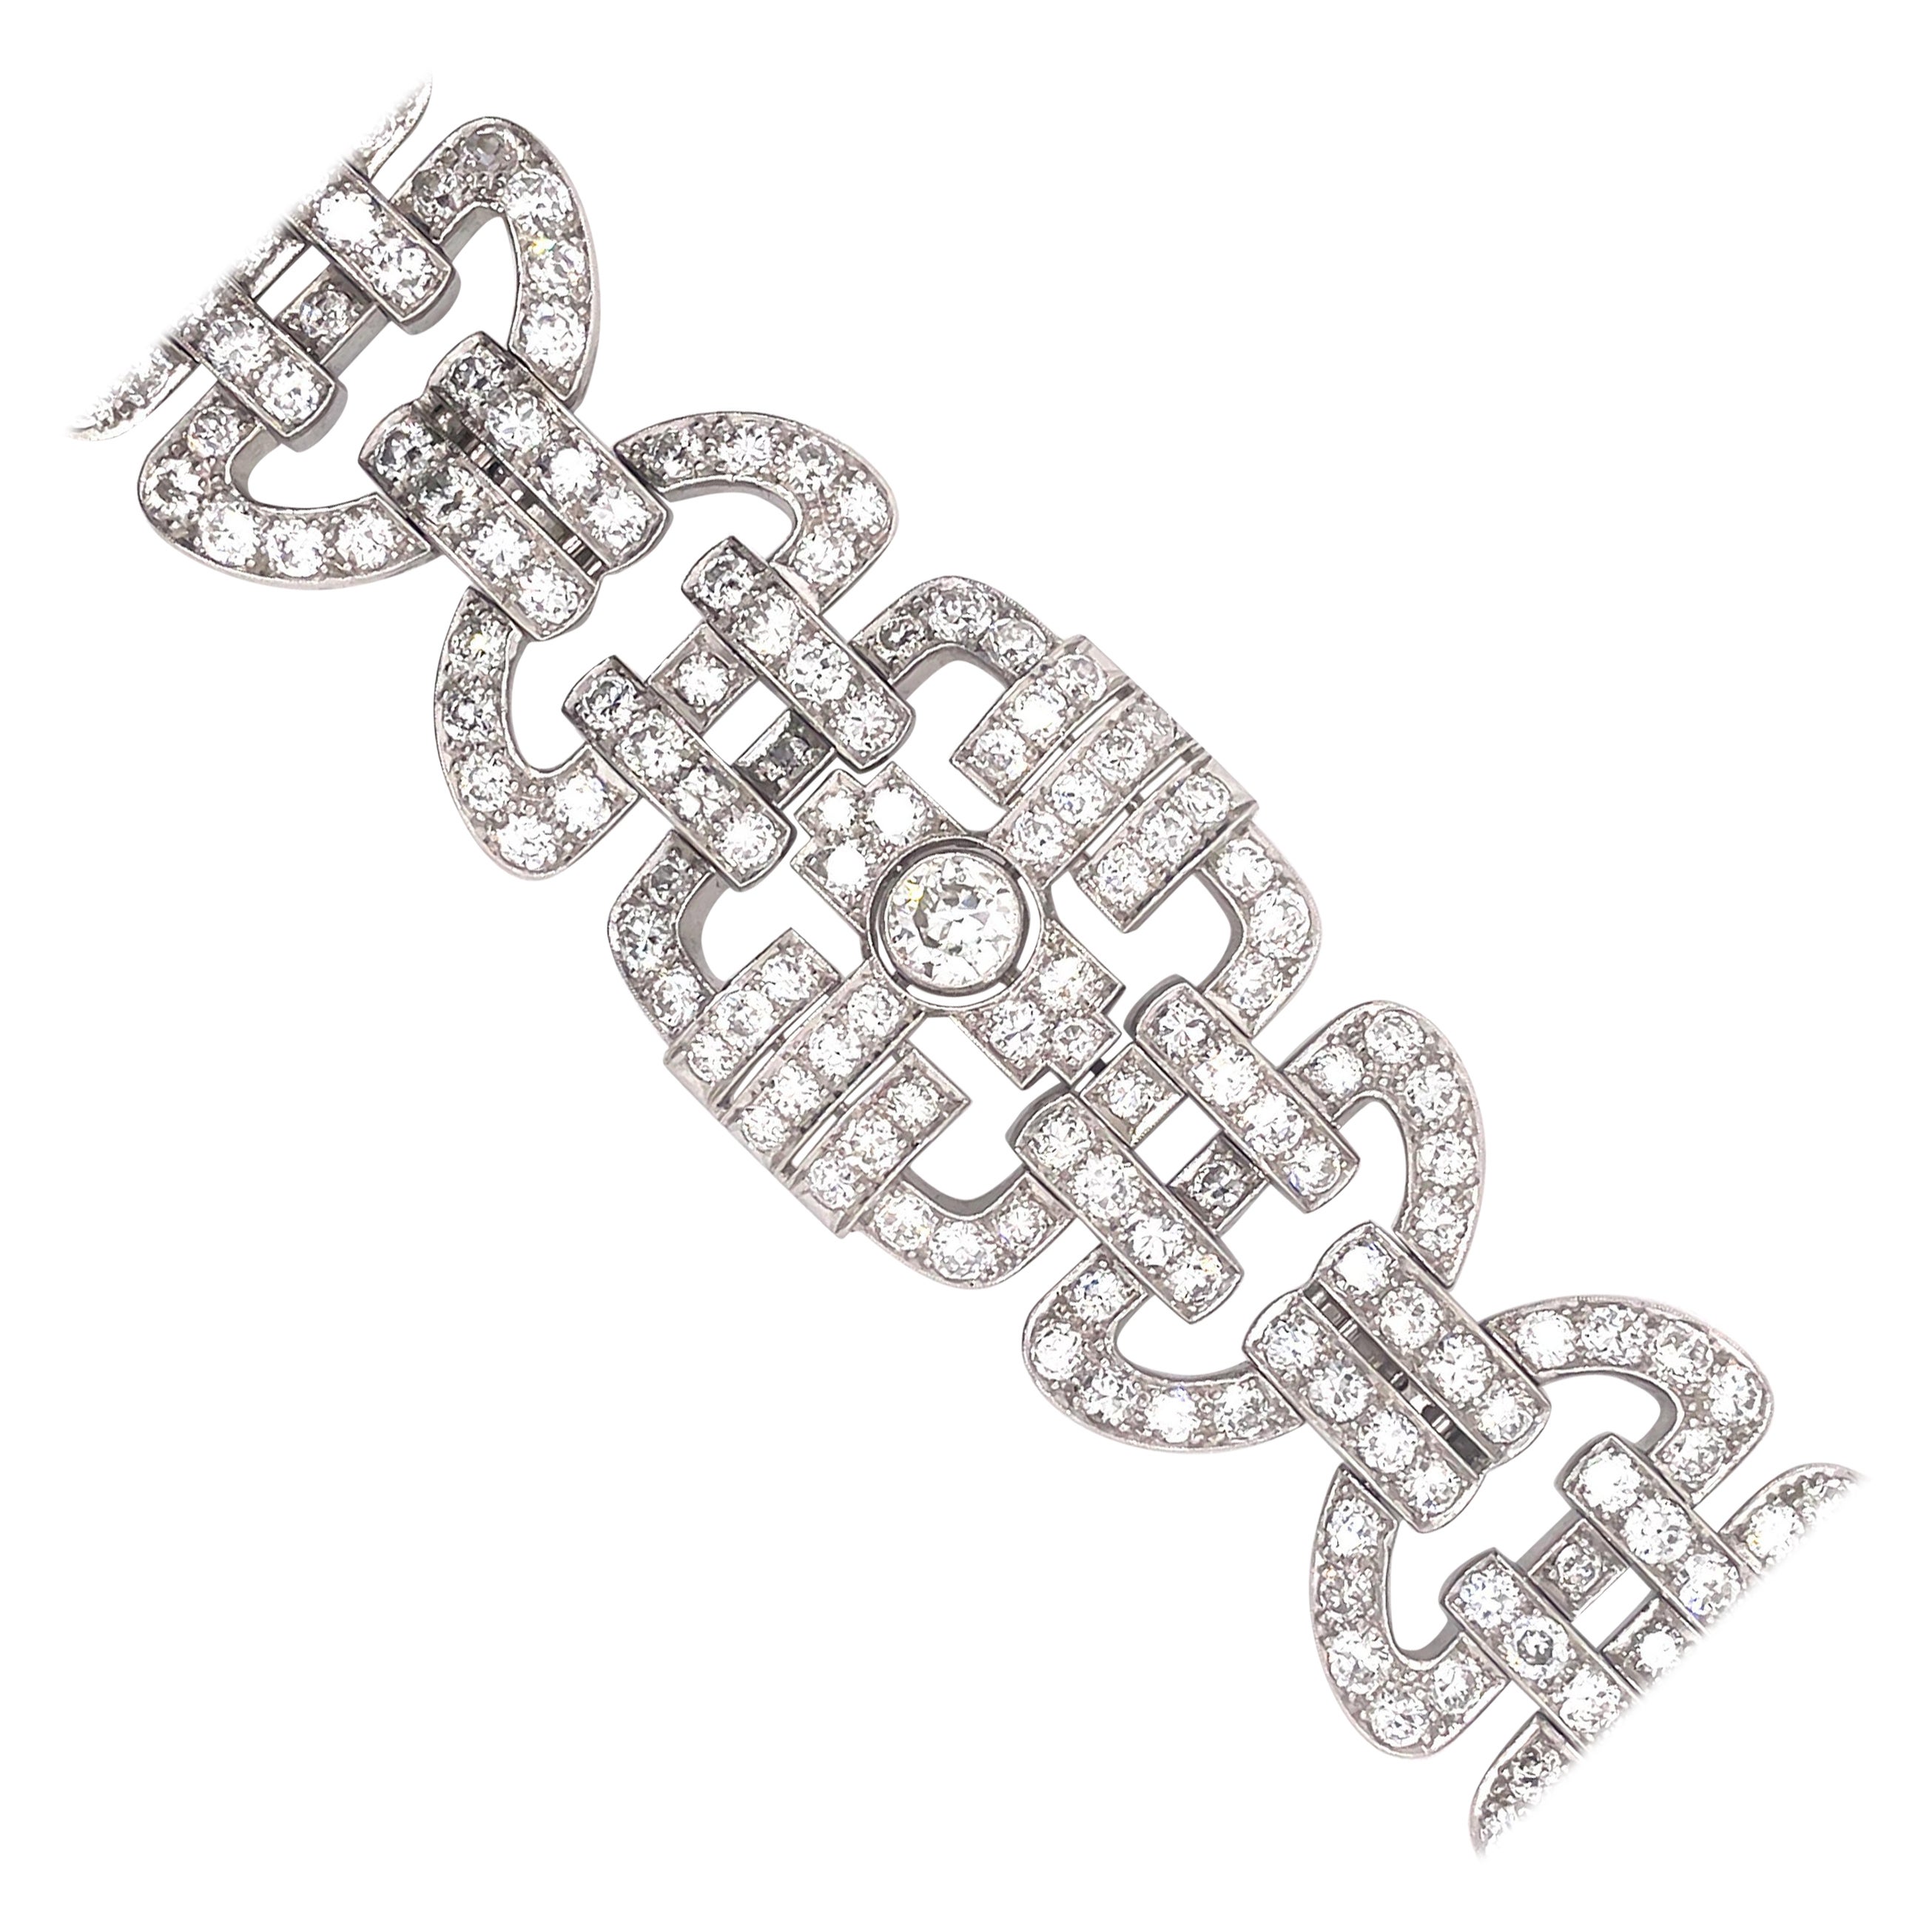 Art Deco Style Apx 35ct Diamond Bracelet Platinum For Sale